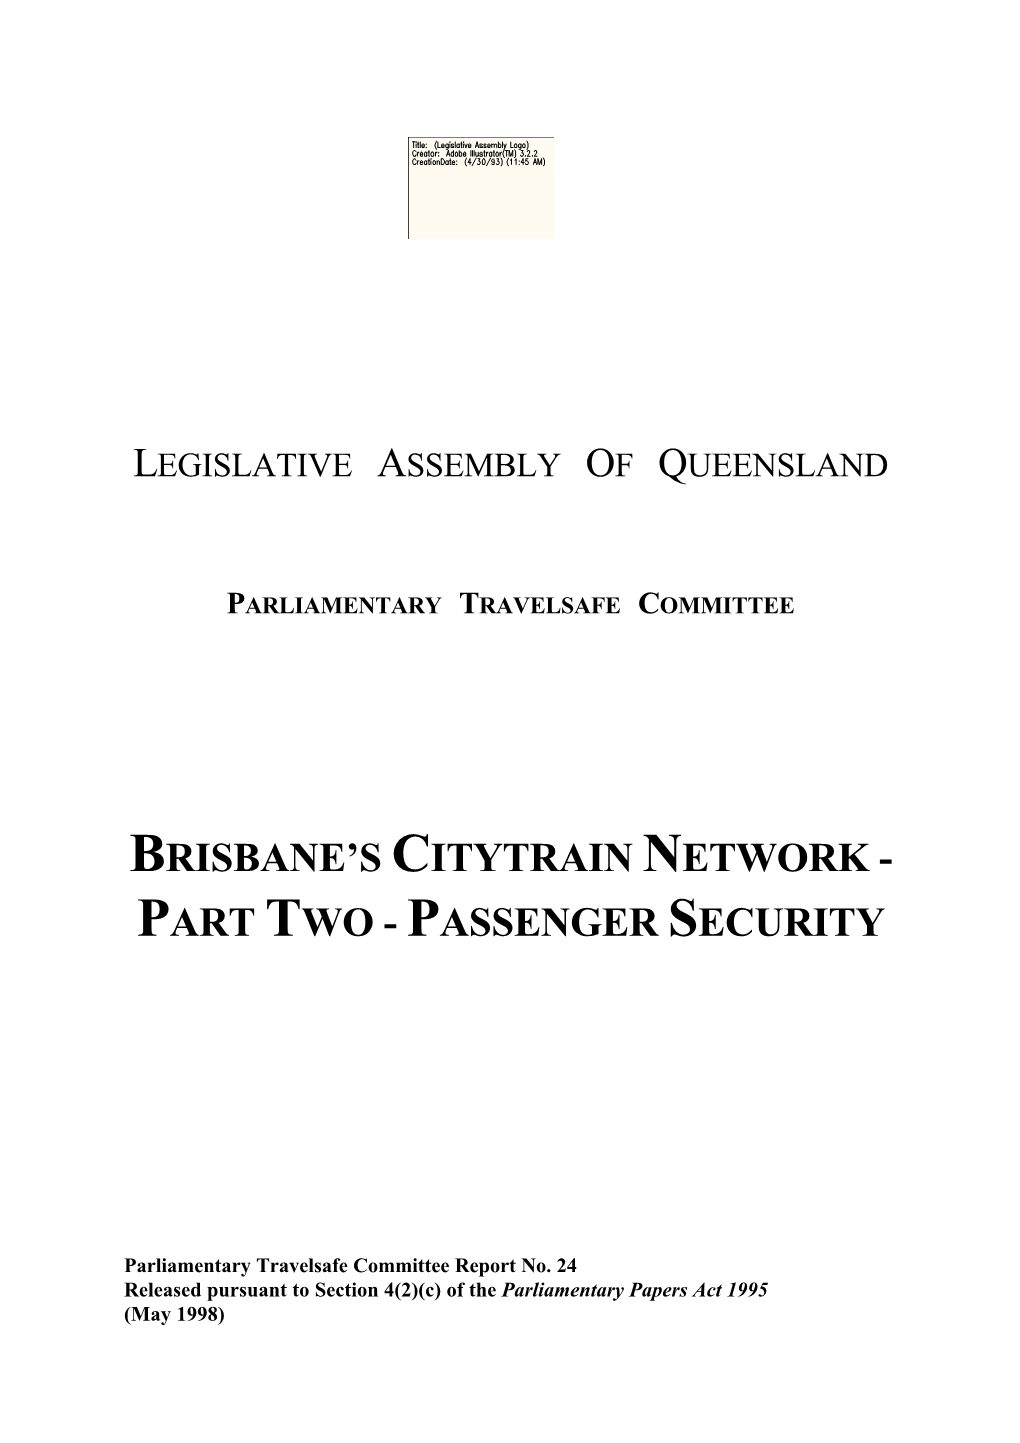 Brisbane's Citytrain Network